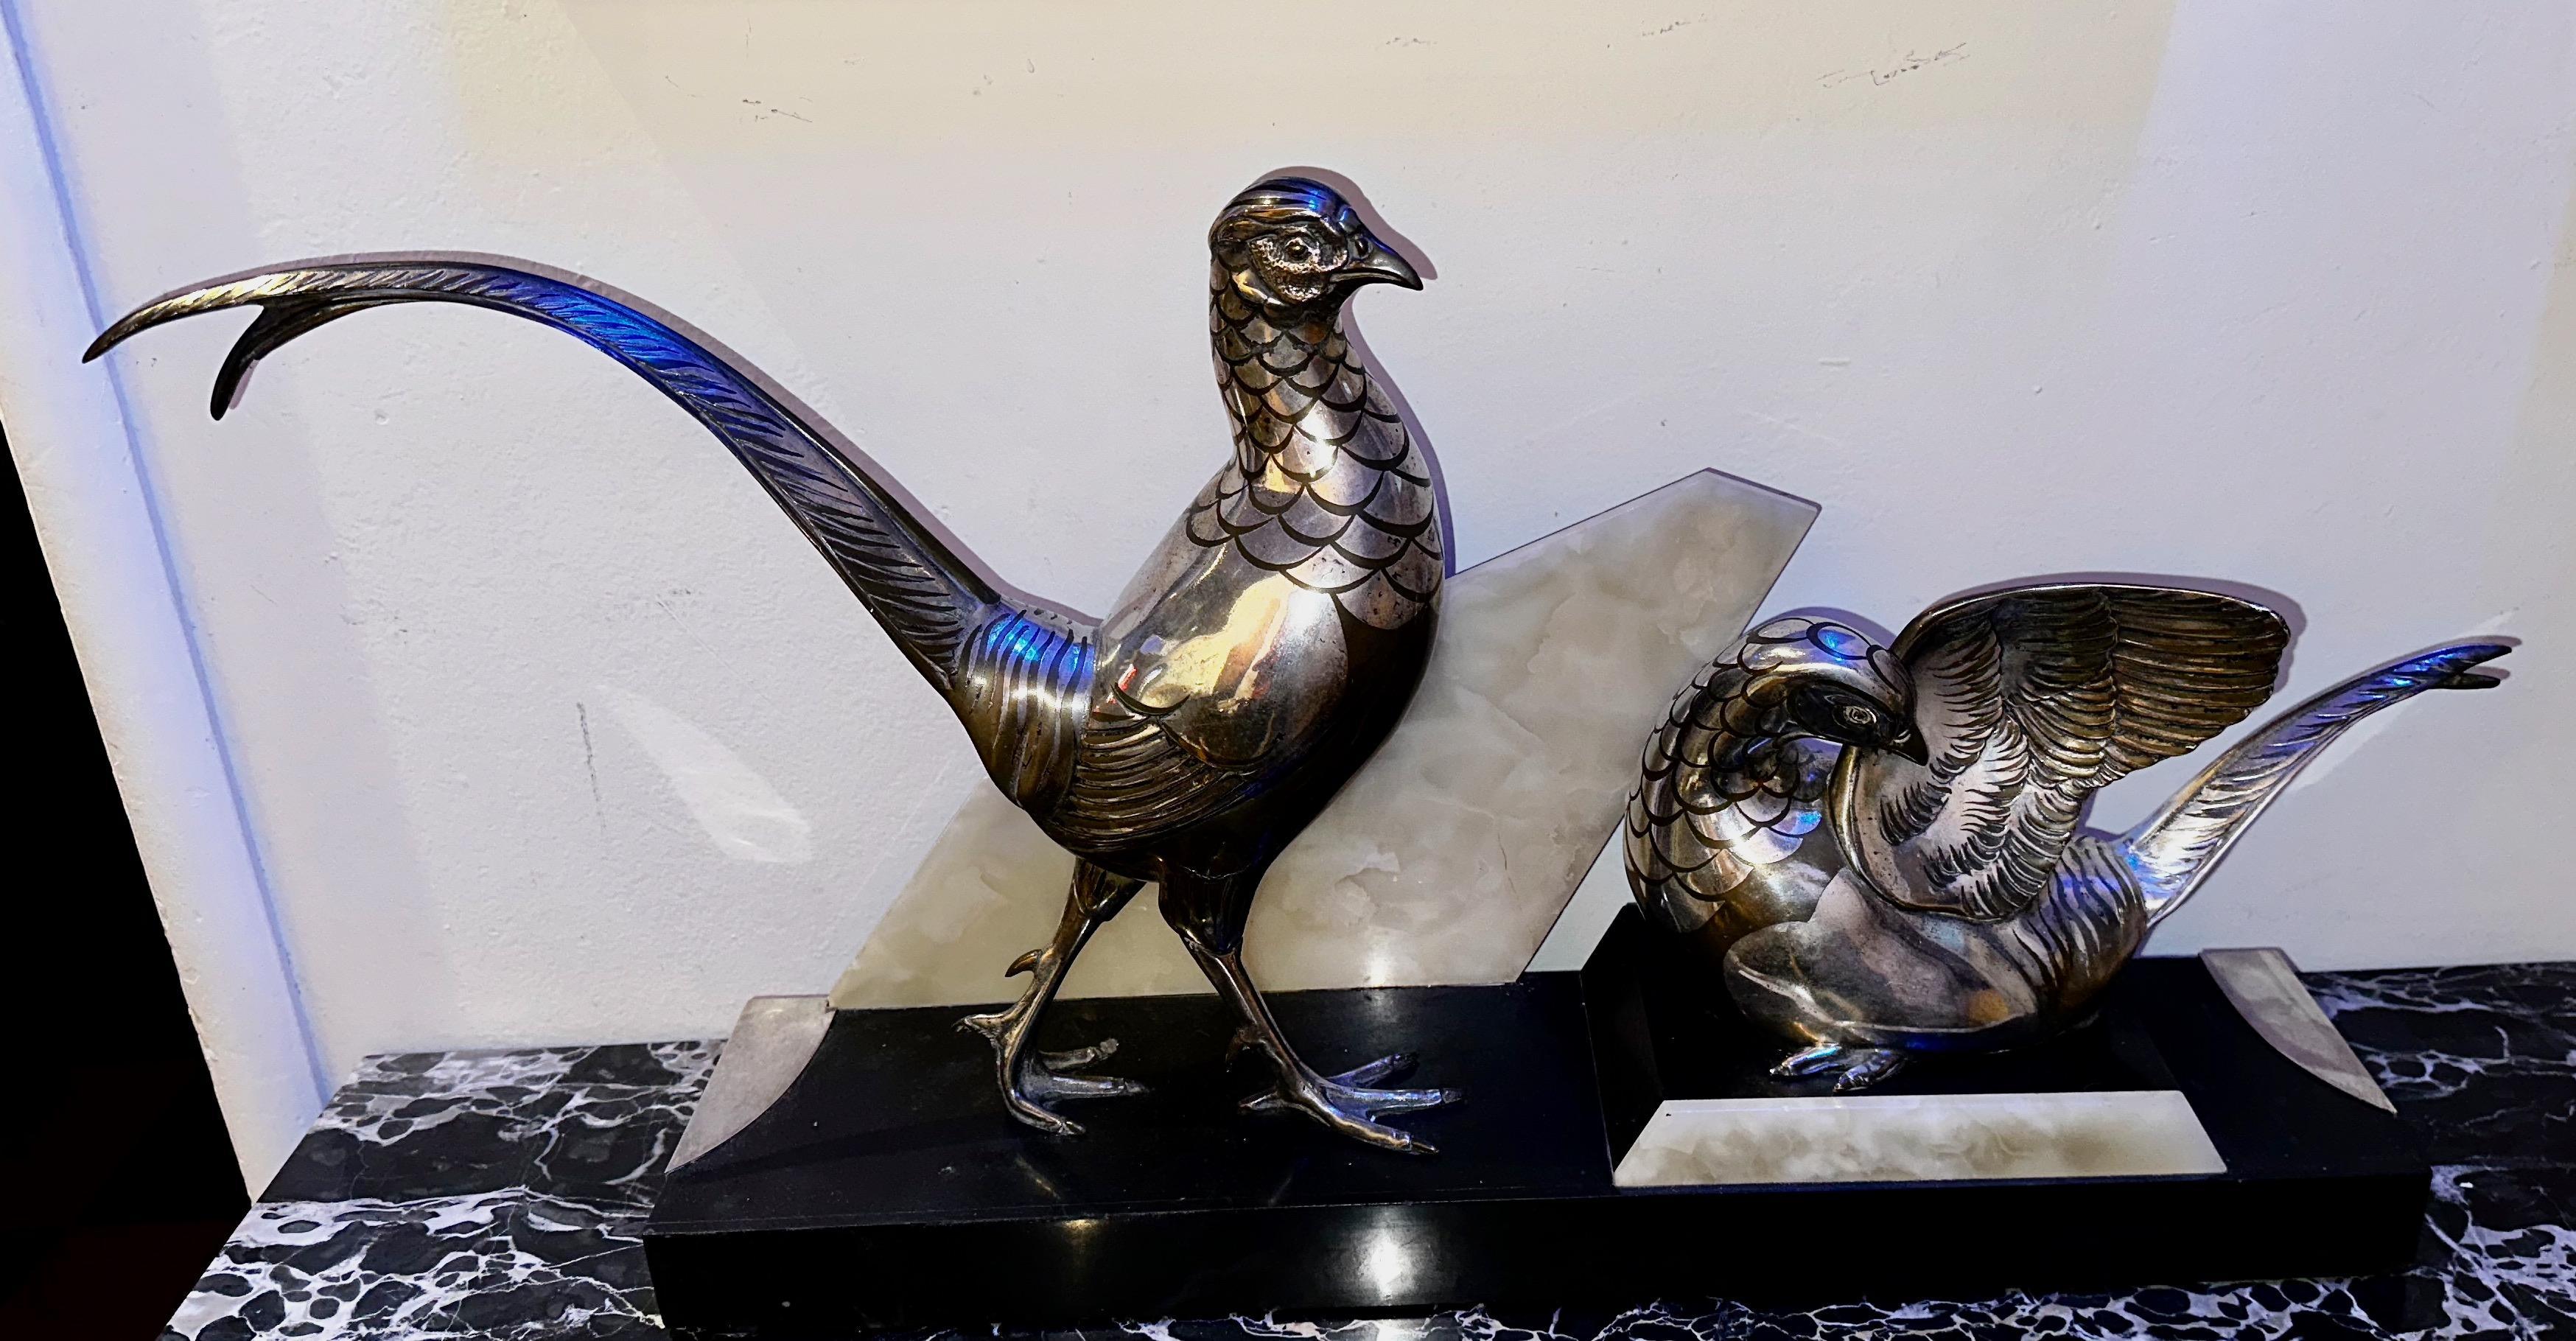 La statue d'oiseaux Art déco de Rochard est un traitement unique de deux faisans dans des positions contrastées. Les deux figures sont montées sur un magnifique socle réalisé en trois couleurs : marbre, quartz et métal argenté. La signature Rochard